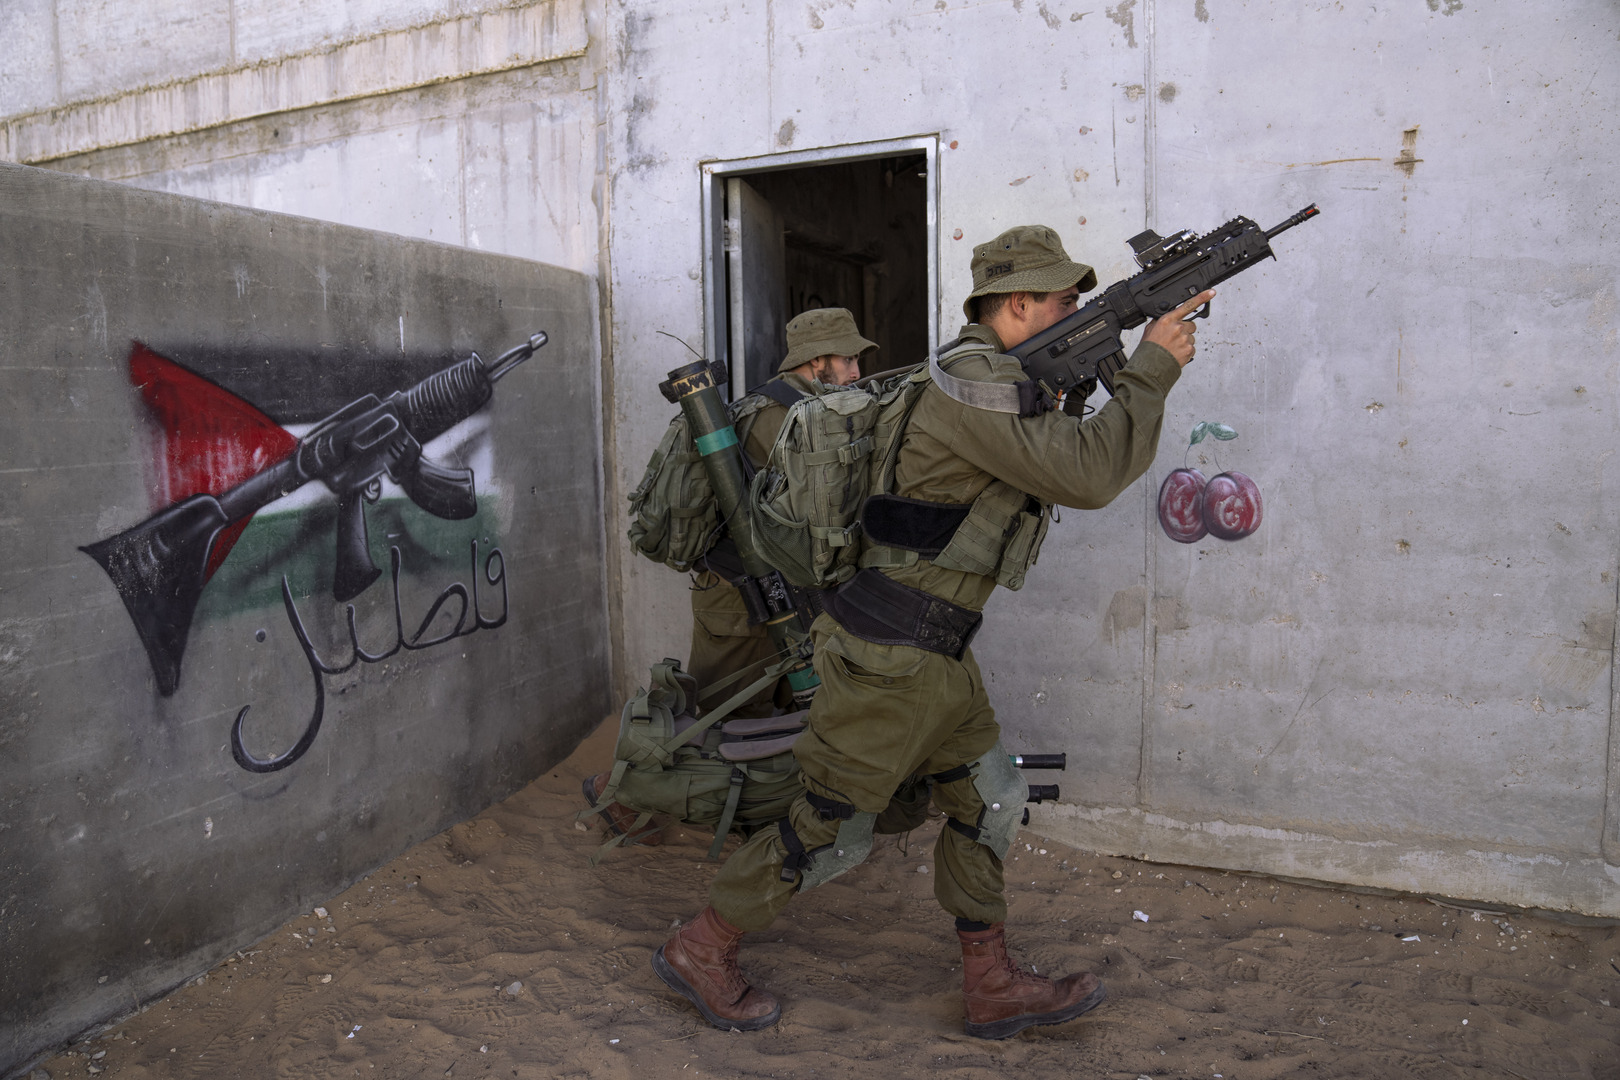 اشتباكات مسلحة وعنيفة خلال اقتحام القوات الإسرائيلية جنين واعتقالات في الضفة (فيديوهات)